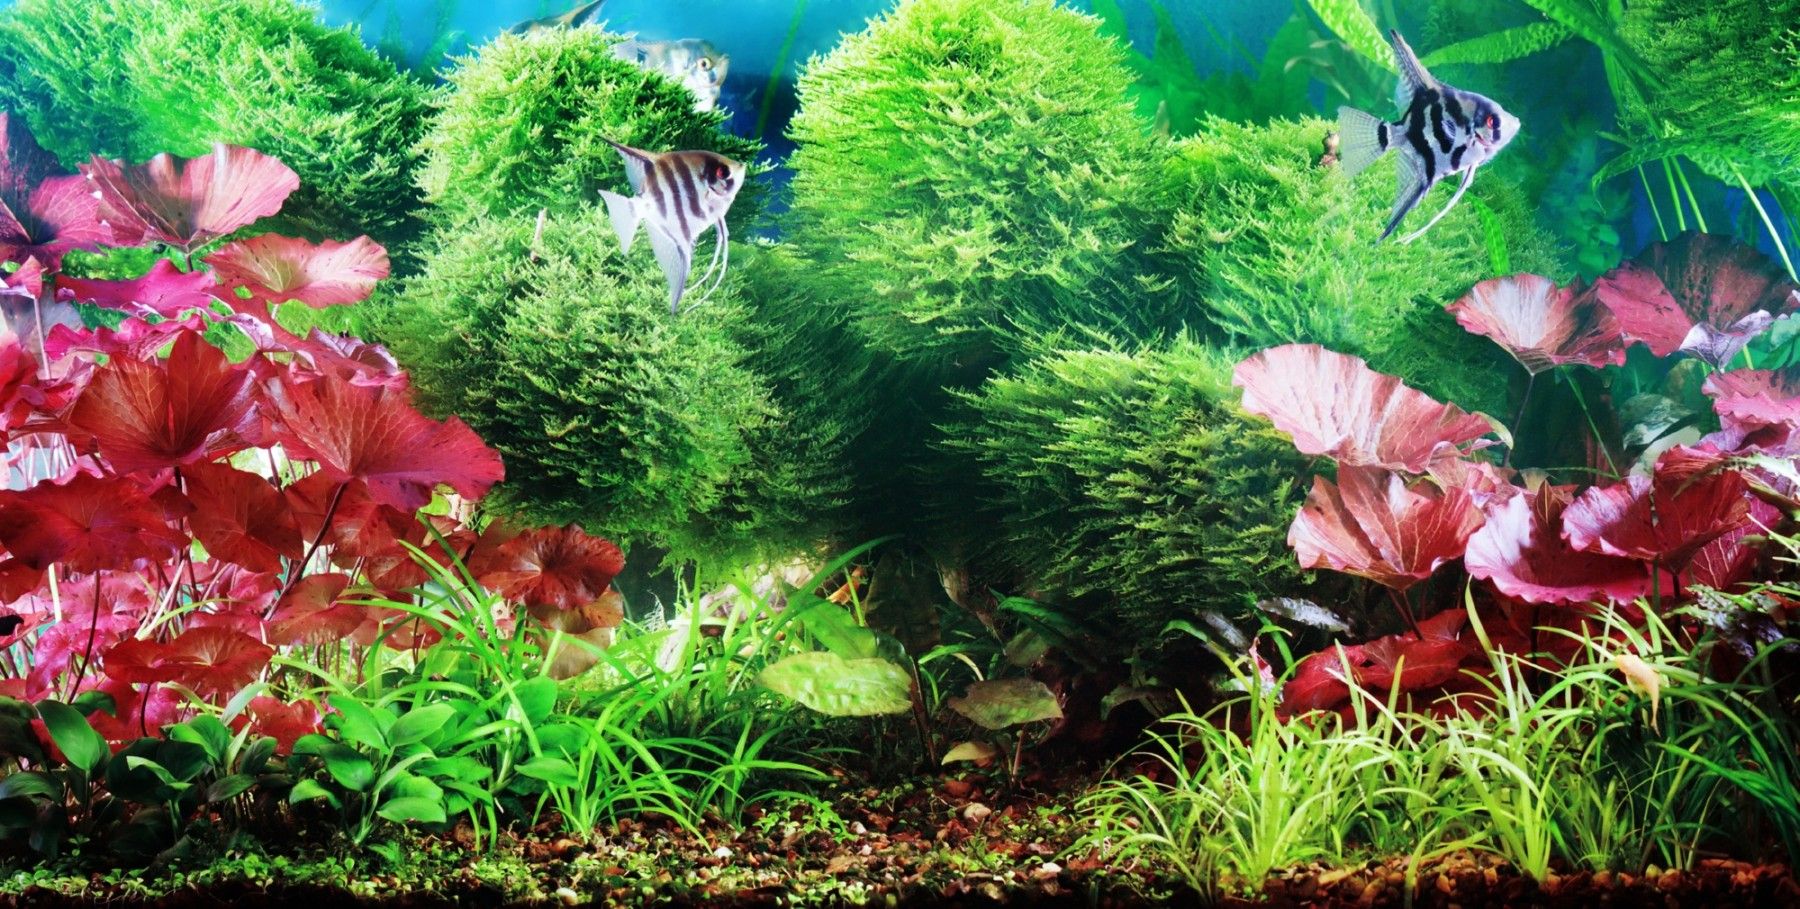 decorative planted aquarium with white angelfish